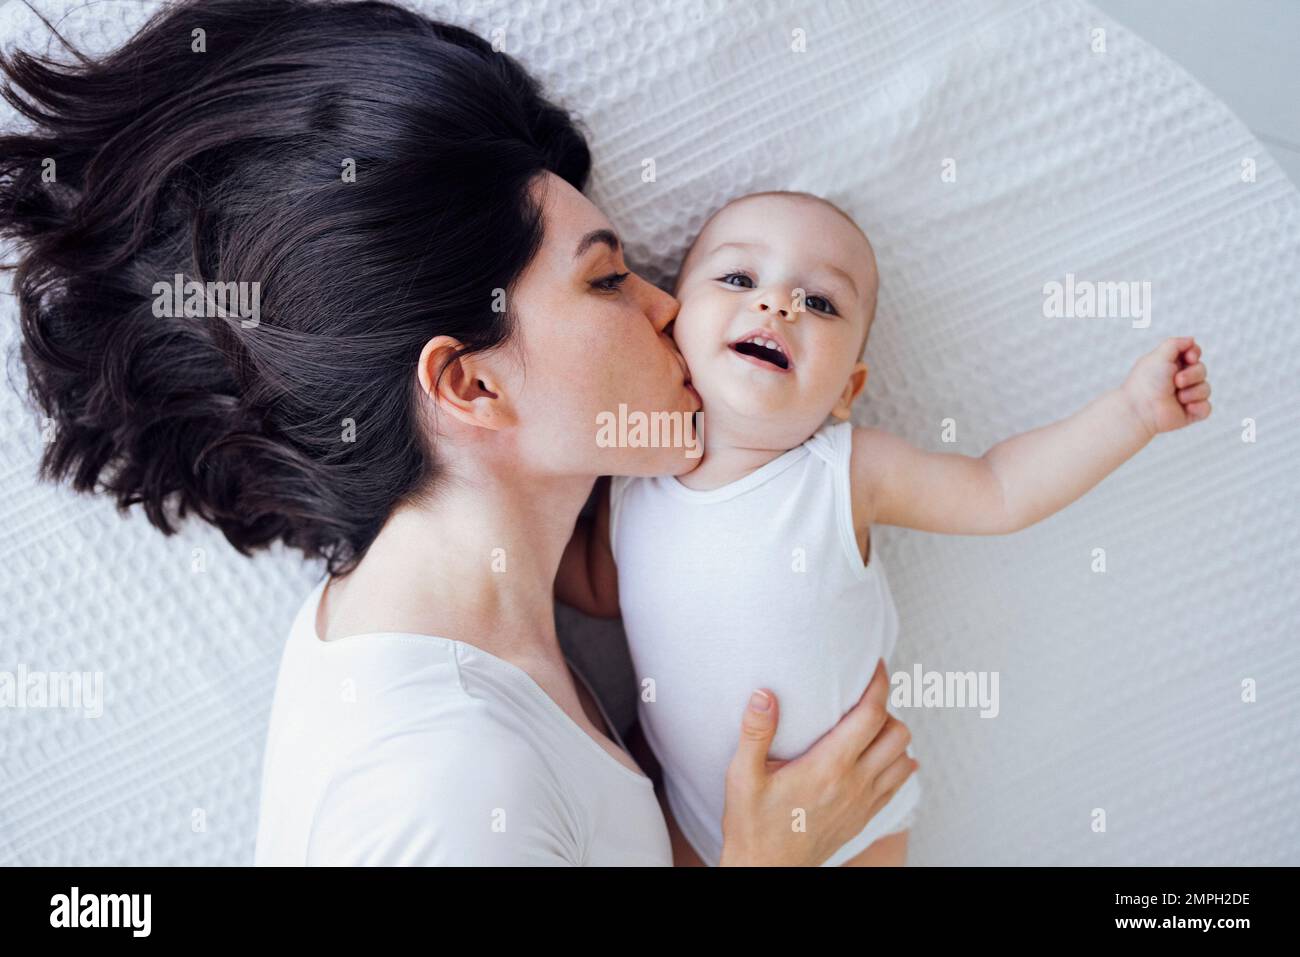 Jeune belle mère embrasse son bébé mignon sur la joue. La brune blanche touche son enfant souriant avec son visage. Joli bébé dans un body blanc avec h Banque D'Images